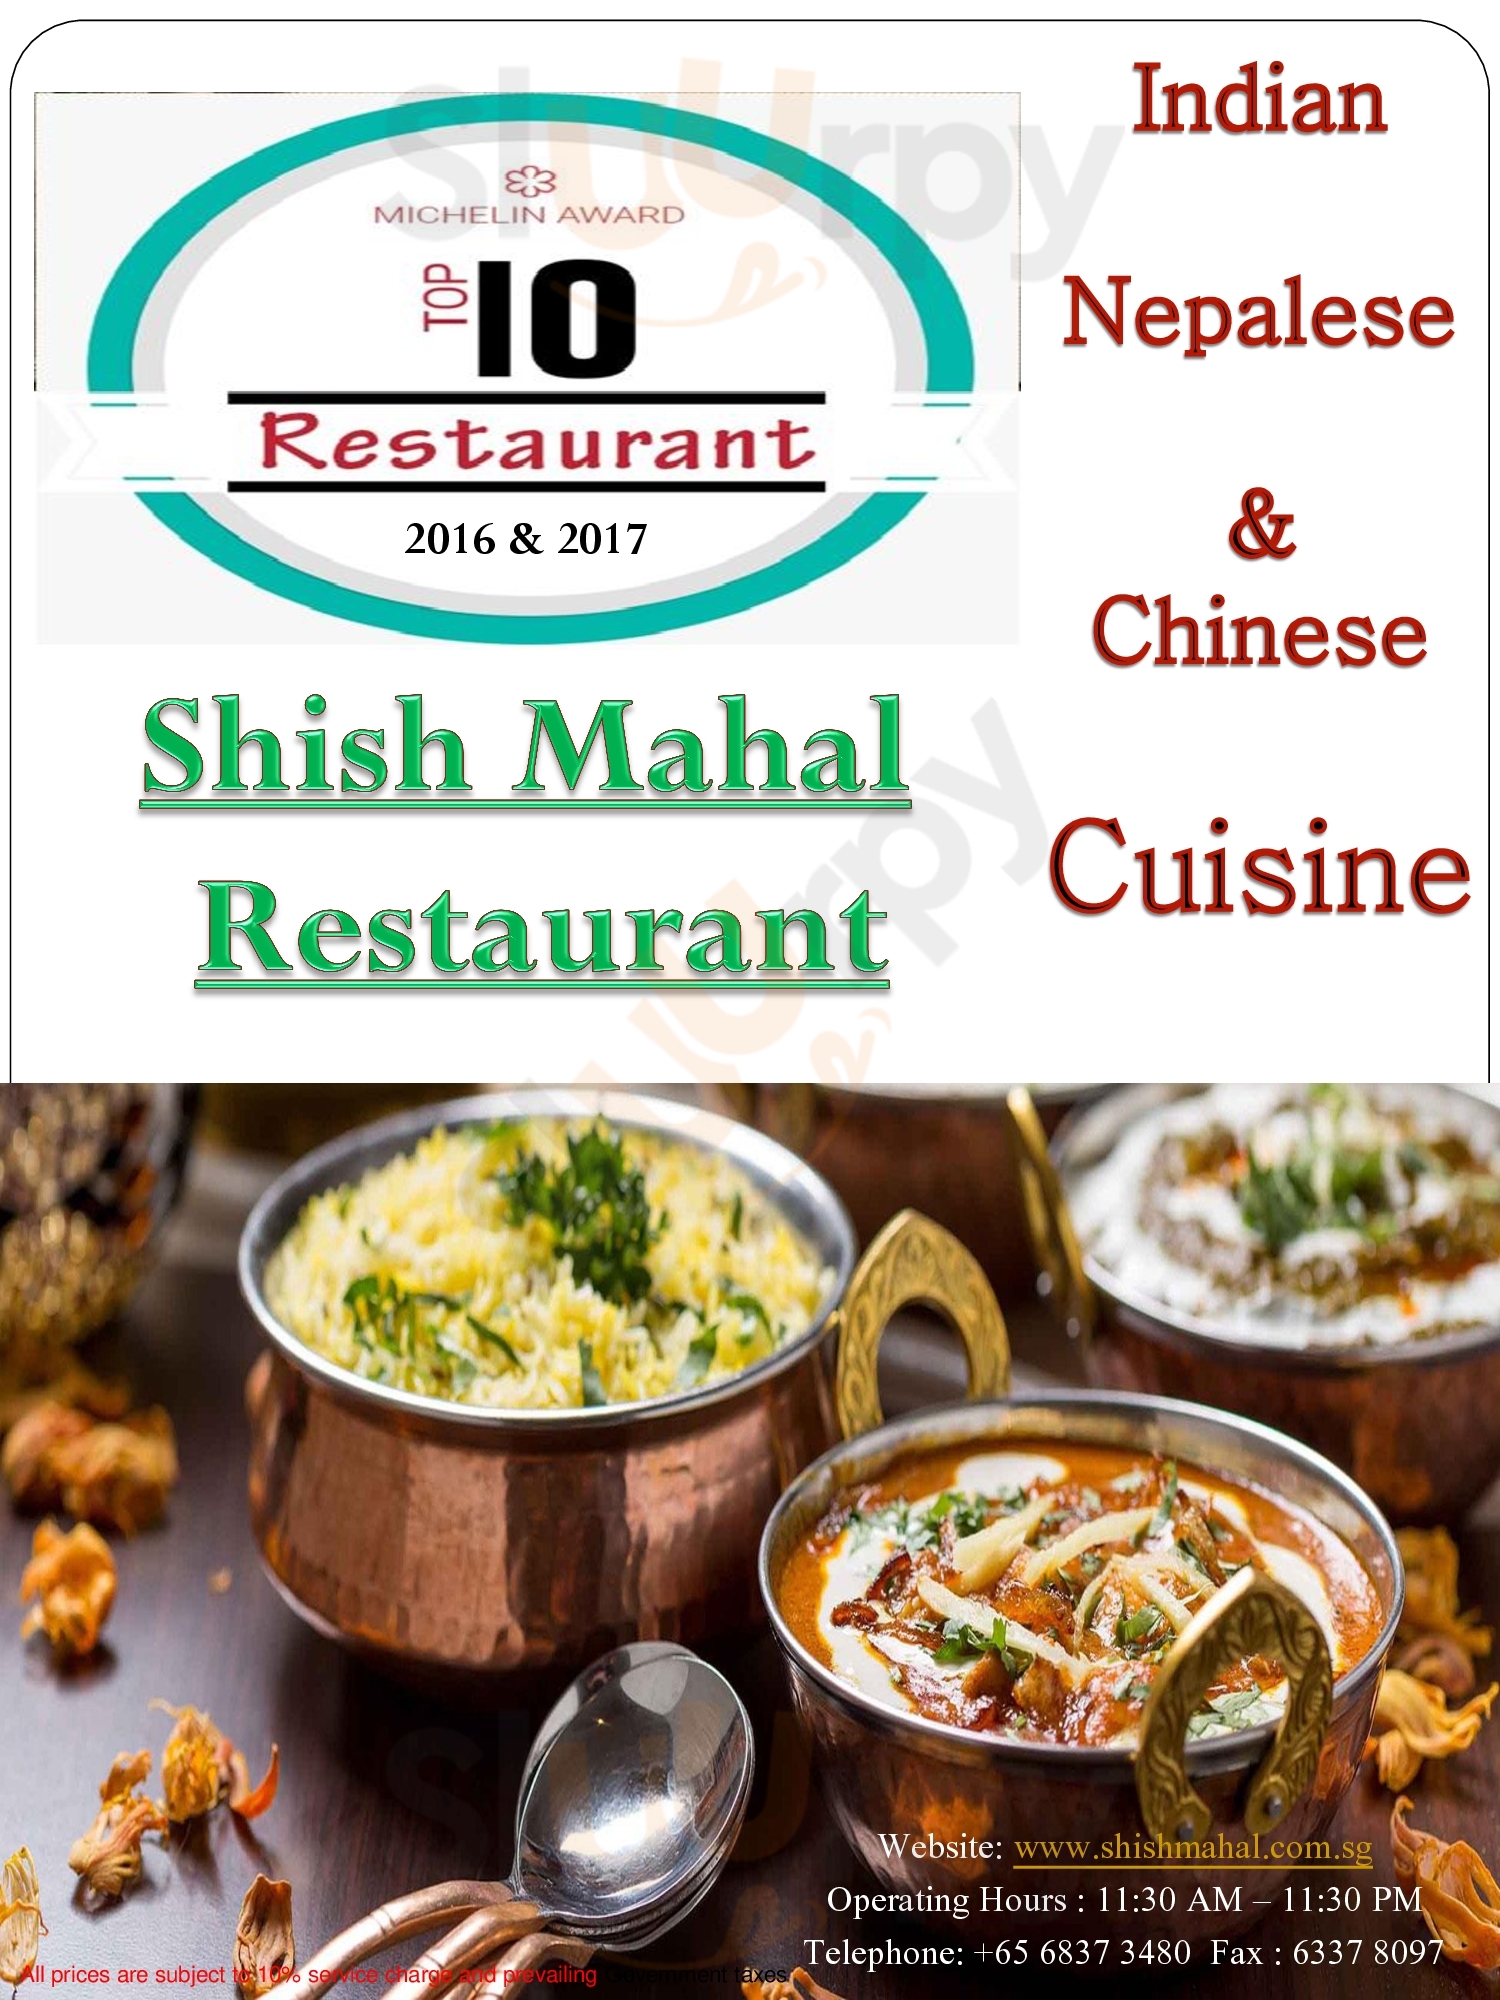 Shish Mahal Restaurant Singapore Menu - 1